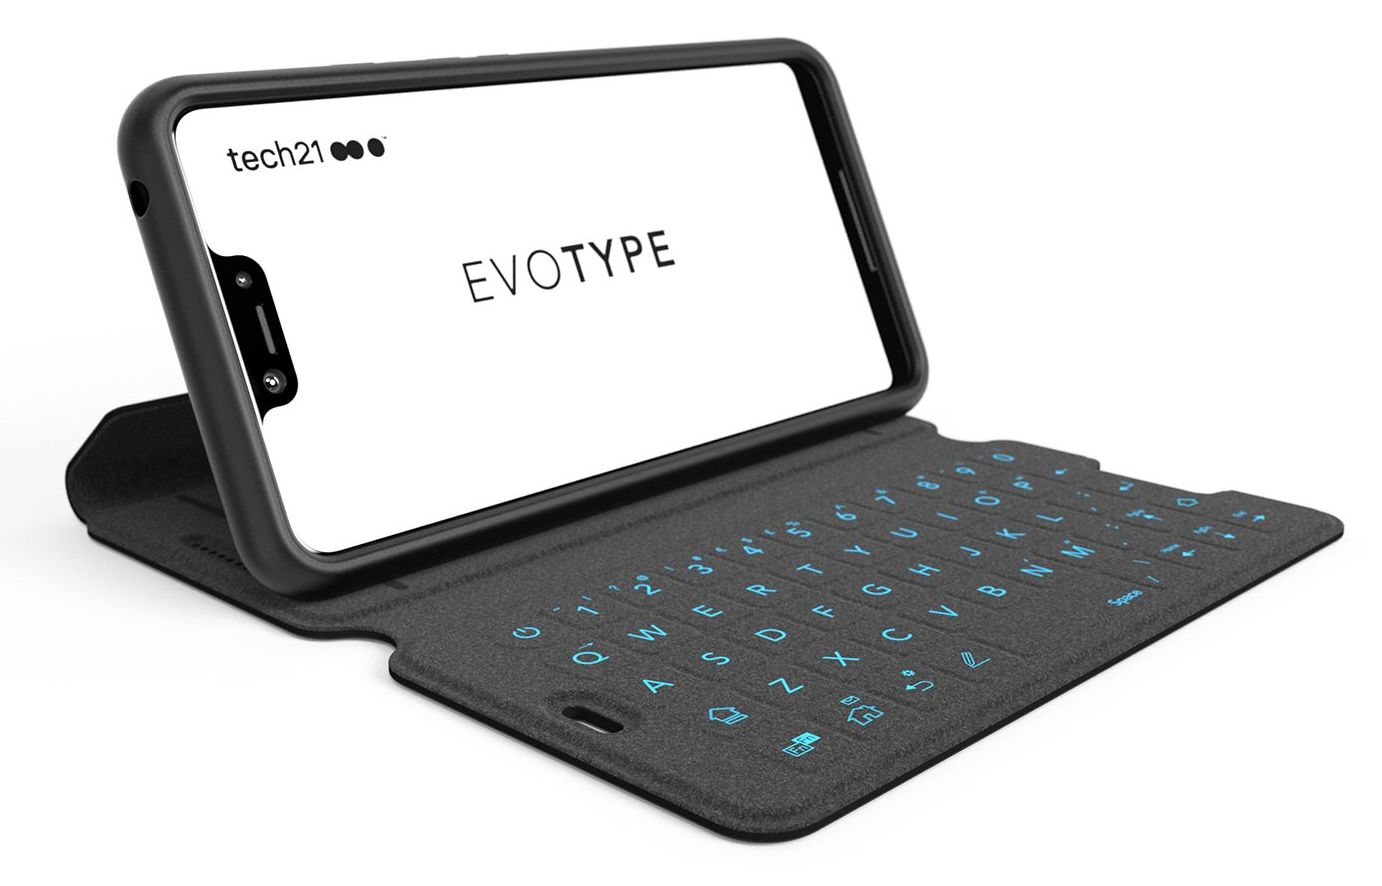 Pixel 3 XL'e QWERTY klavyeli kılıf geldi: Evo Type